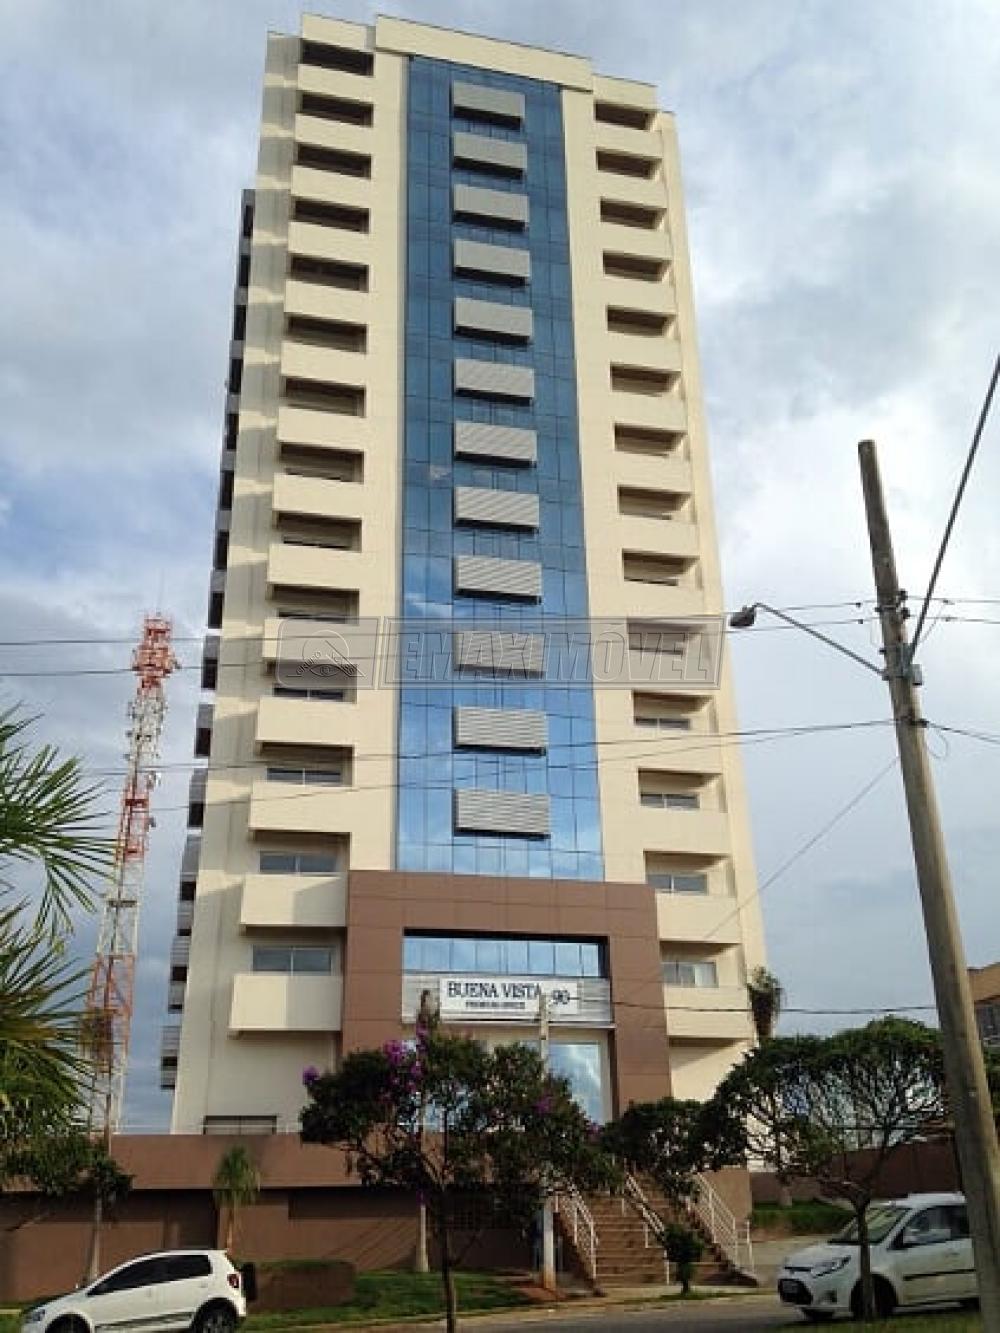 Alugar Sala Comercial / em Condomínio em Sorocaba R$ 900,00 - Foto 1